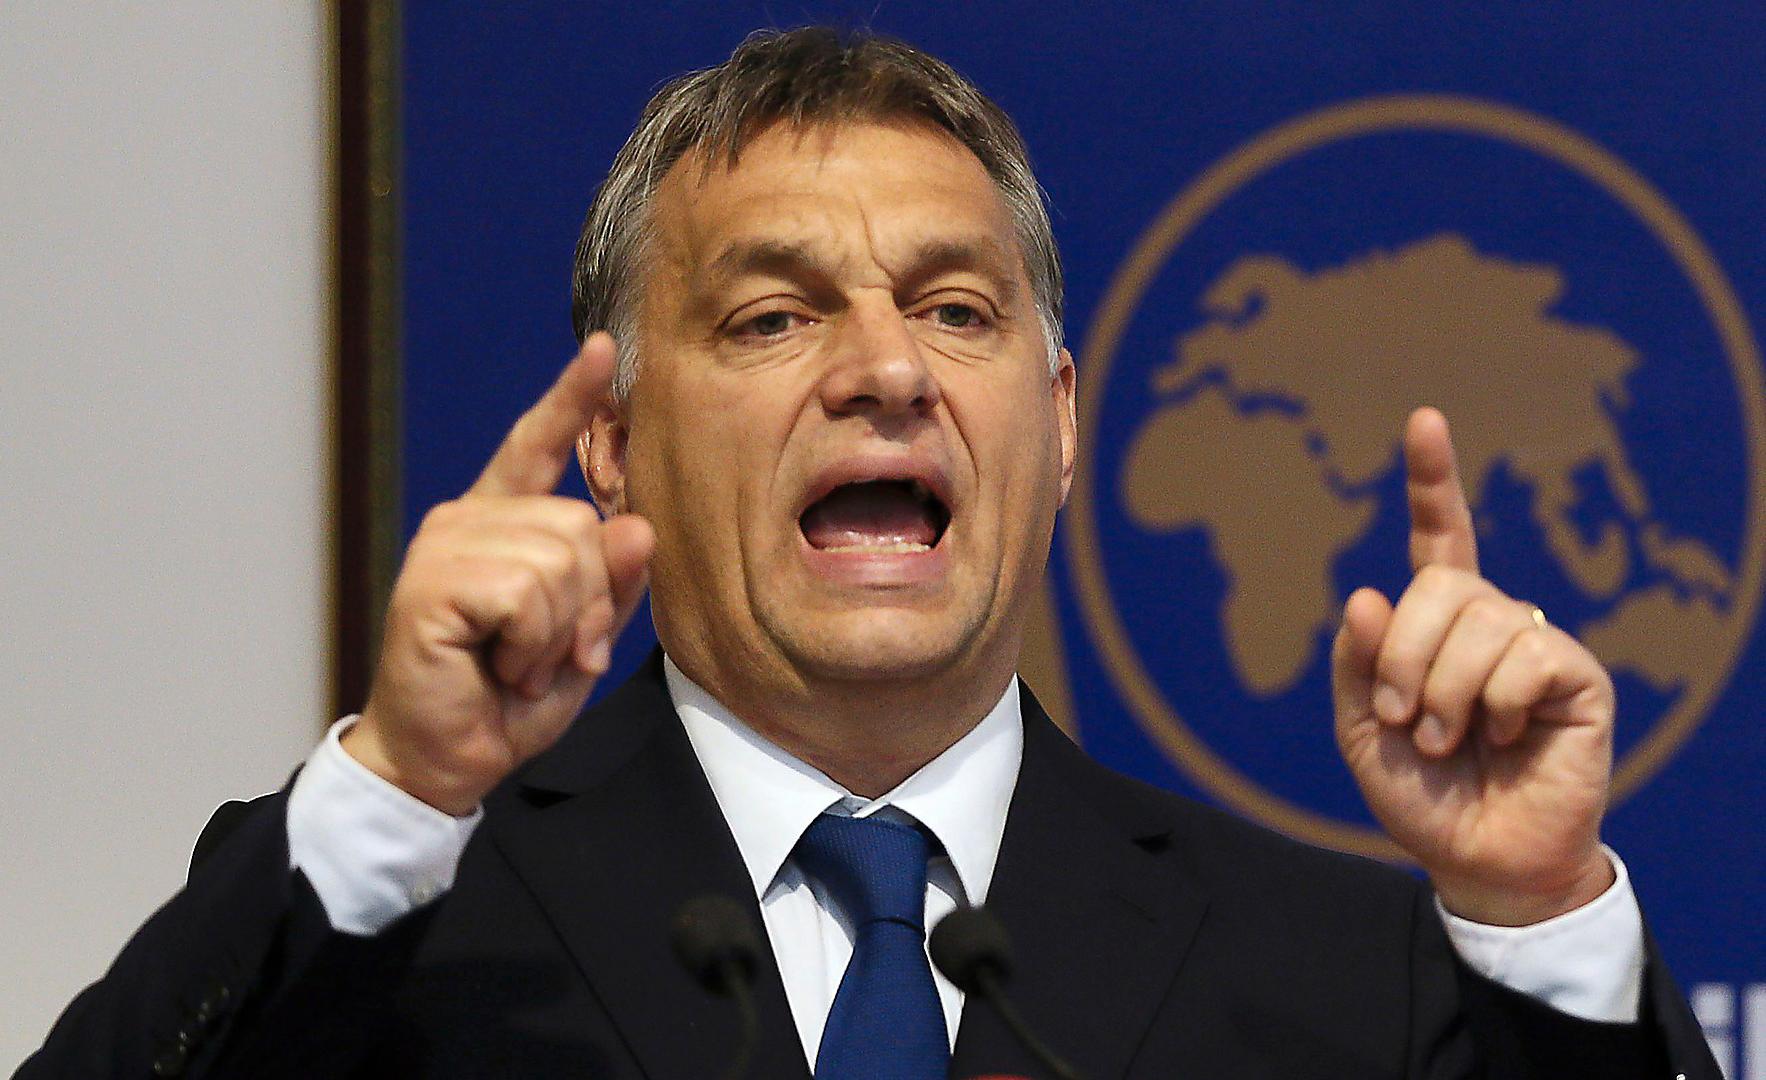 Viktor Orbán, premiärminister och ledare för nationalistiska partiet Fidesz. Foto: AP